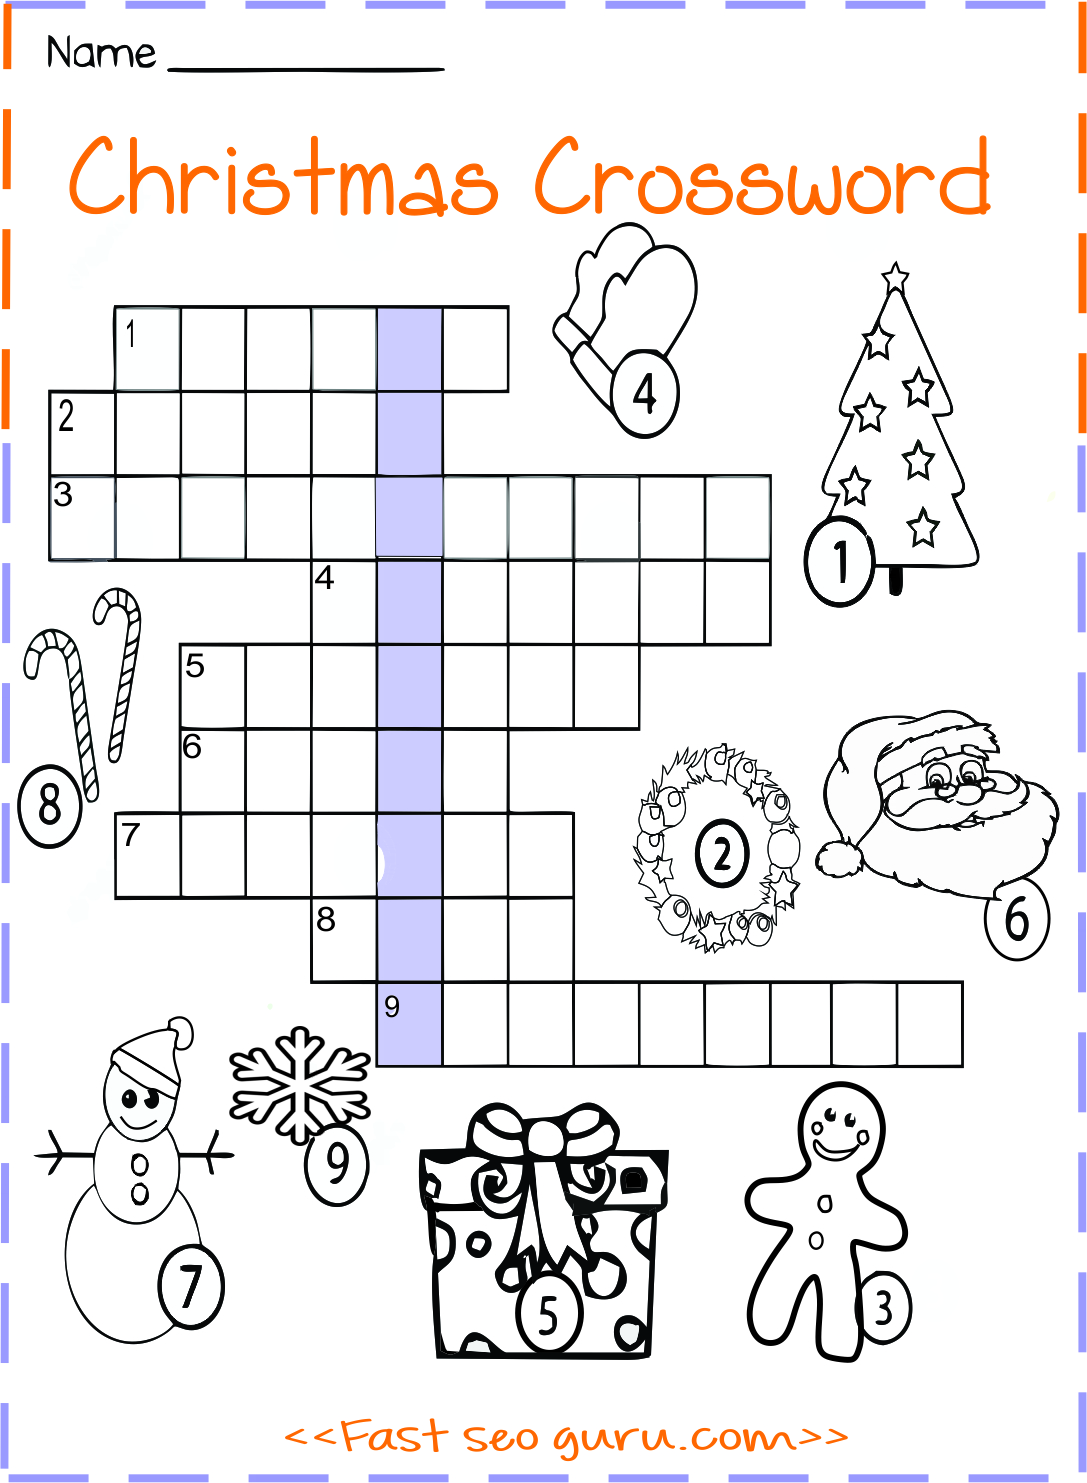 printable-christmas-crossword-worksheet